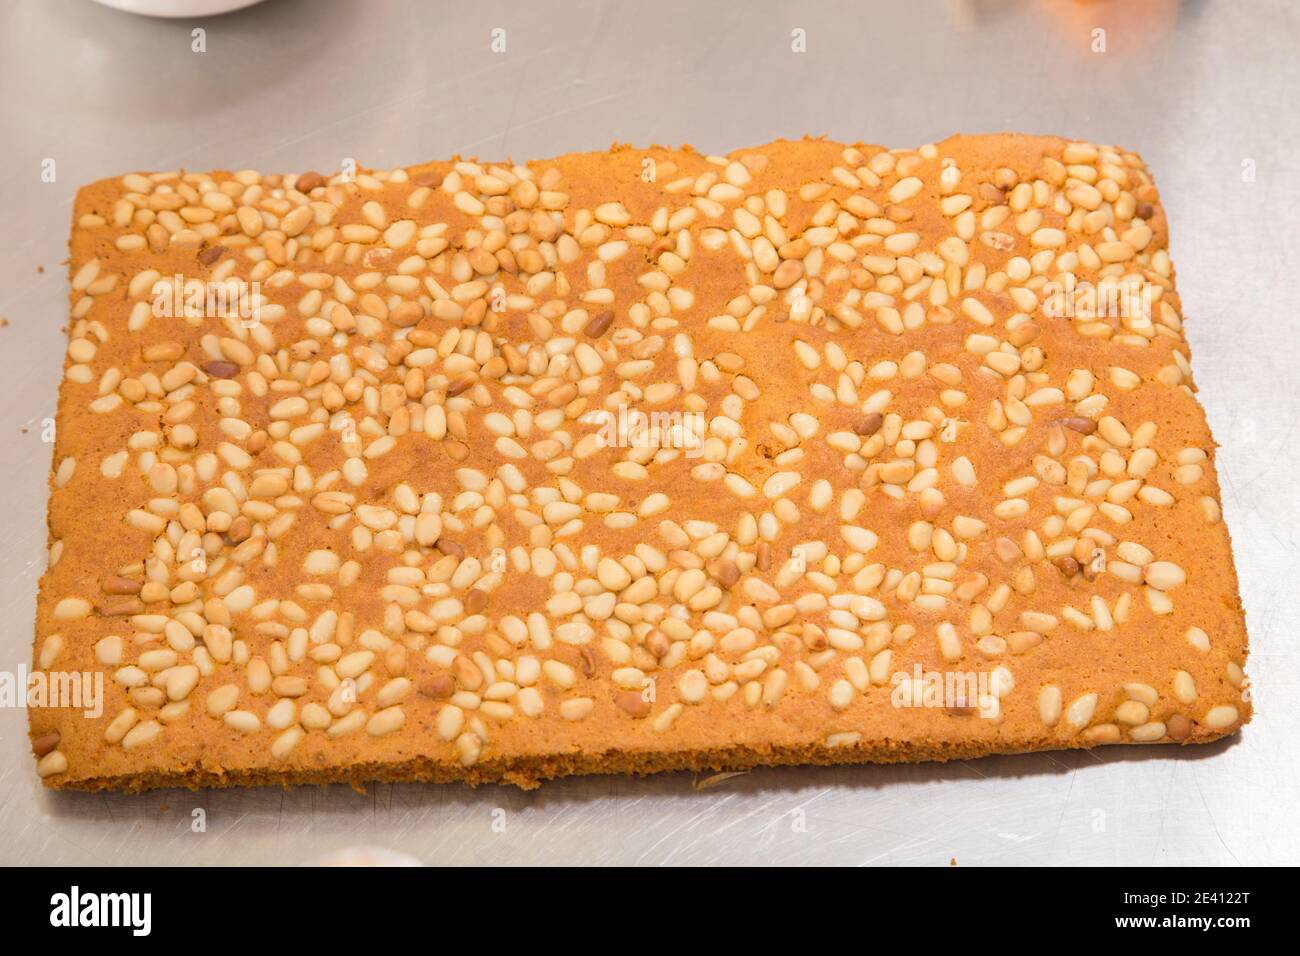 Gâteau éponge de carotte prêt avec pignons de pin. Il est situé sur une surface métallique. Gros plan. Banque D'Images